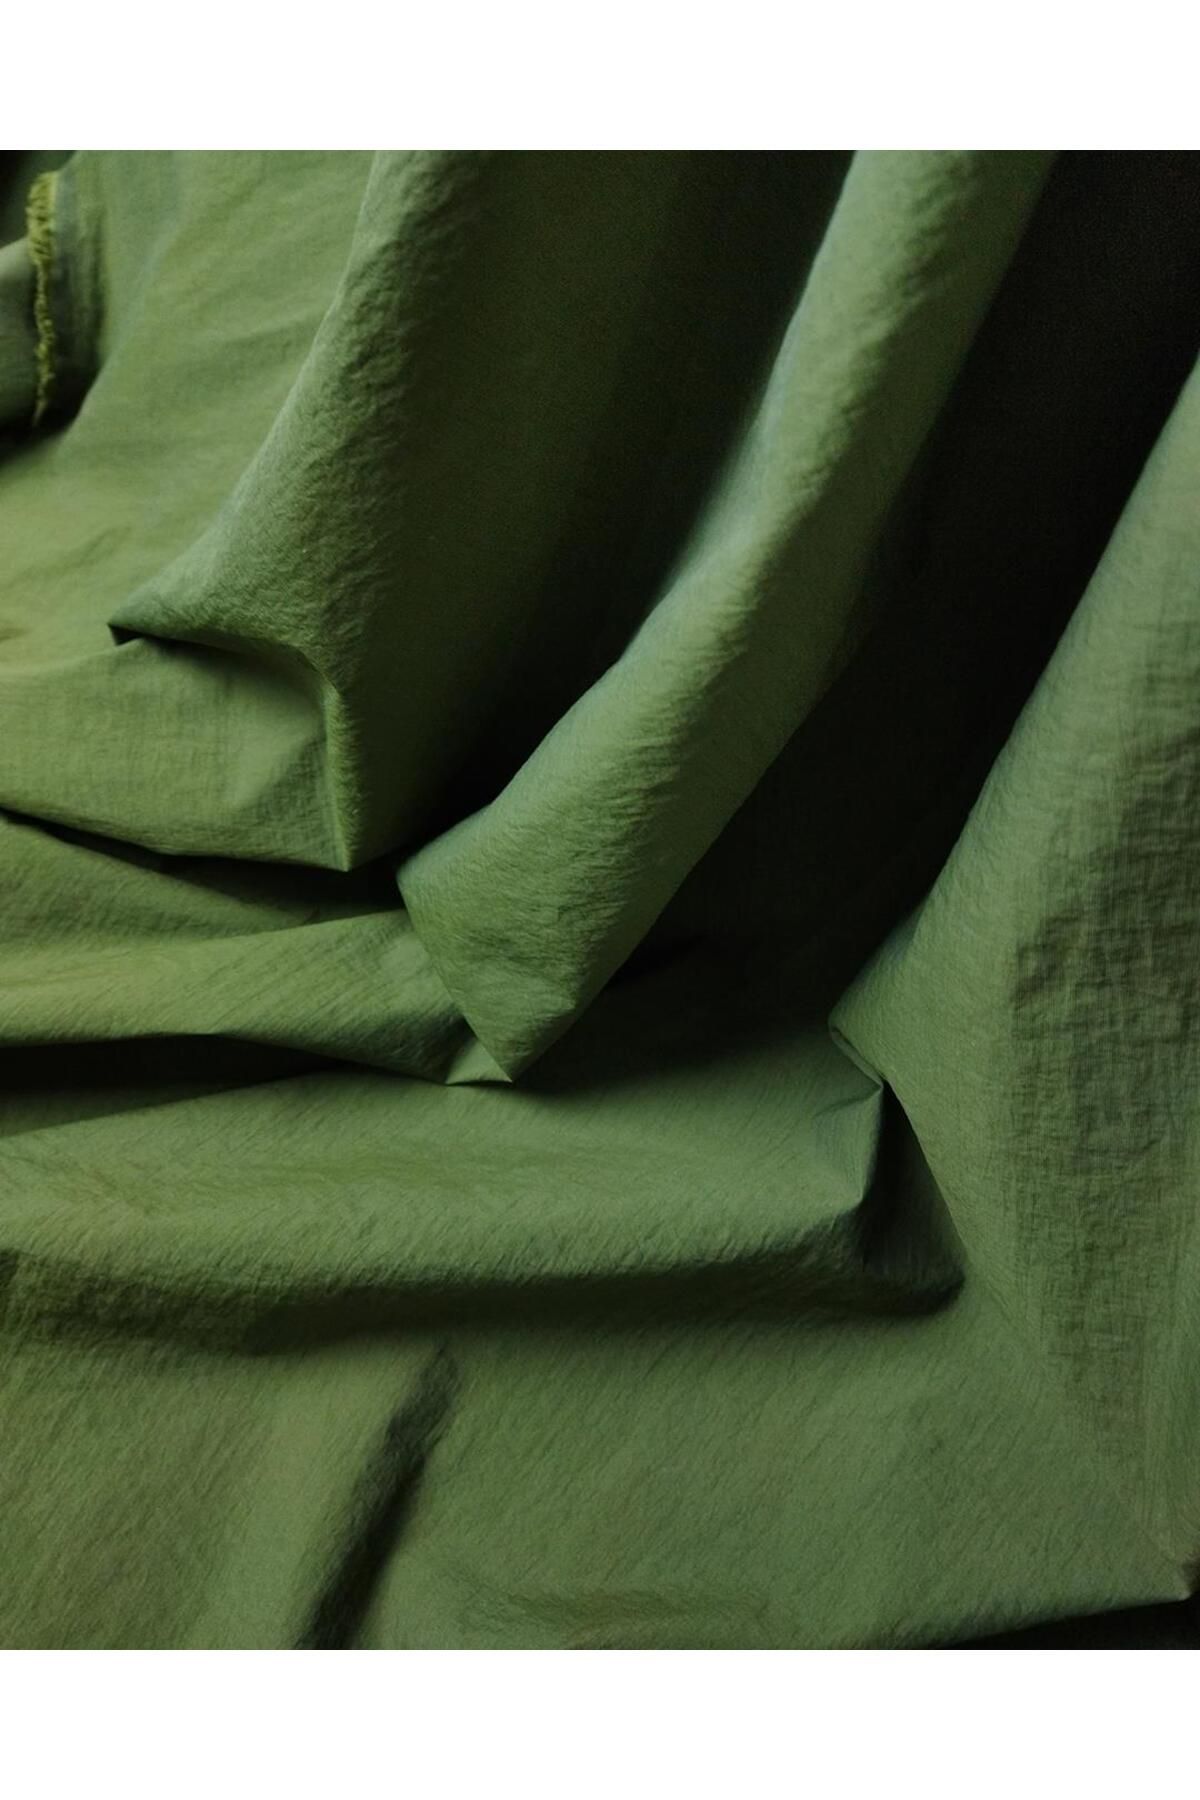 Kumaş Parça Paraşüt Kumaş Hakiye Dönük Yeşil Renkte En: 145 cm